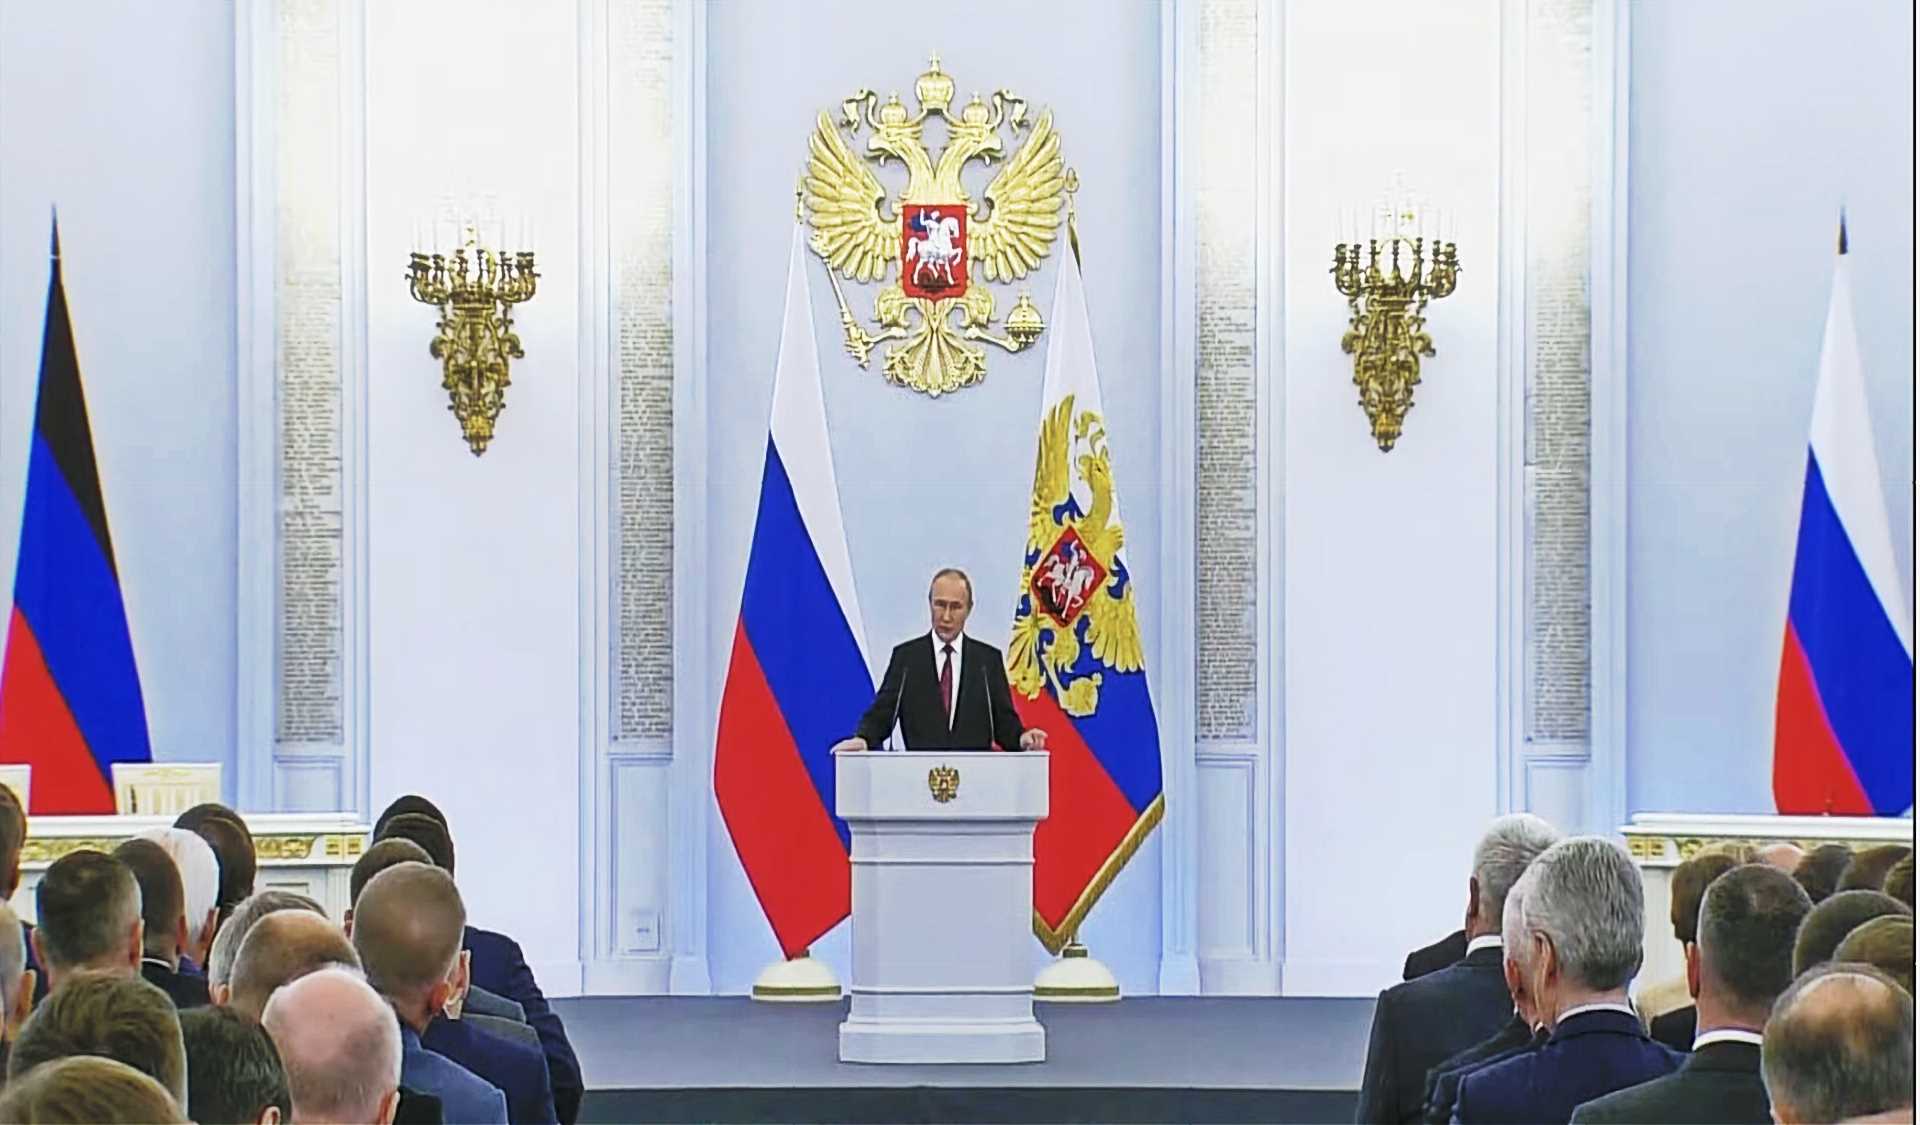 Les annexions de Poutine signifient que les pourparlers américano-russes sont plus critiques que jamais